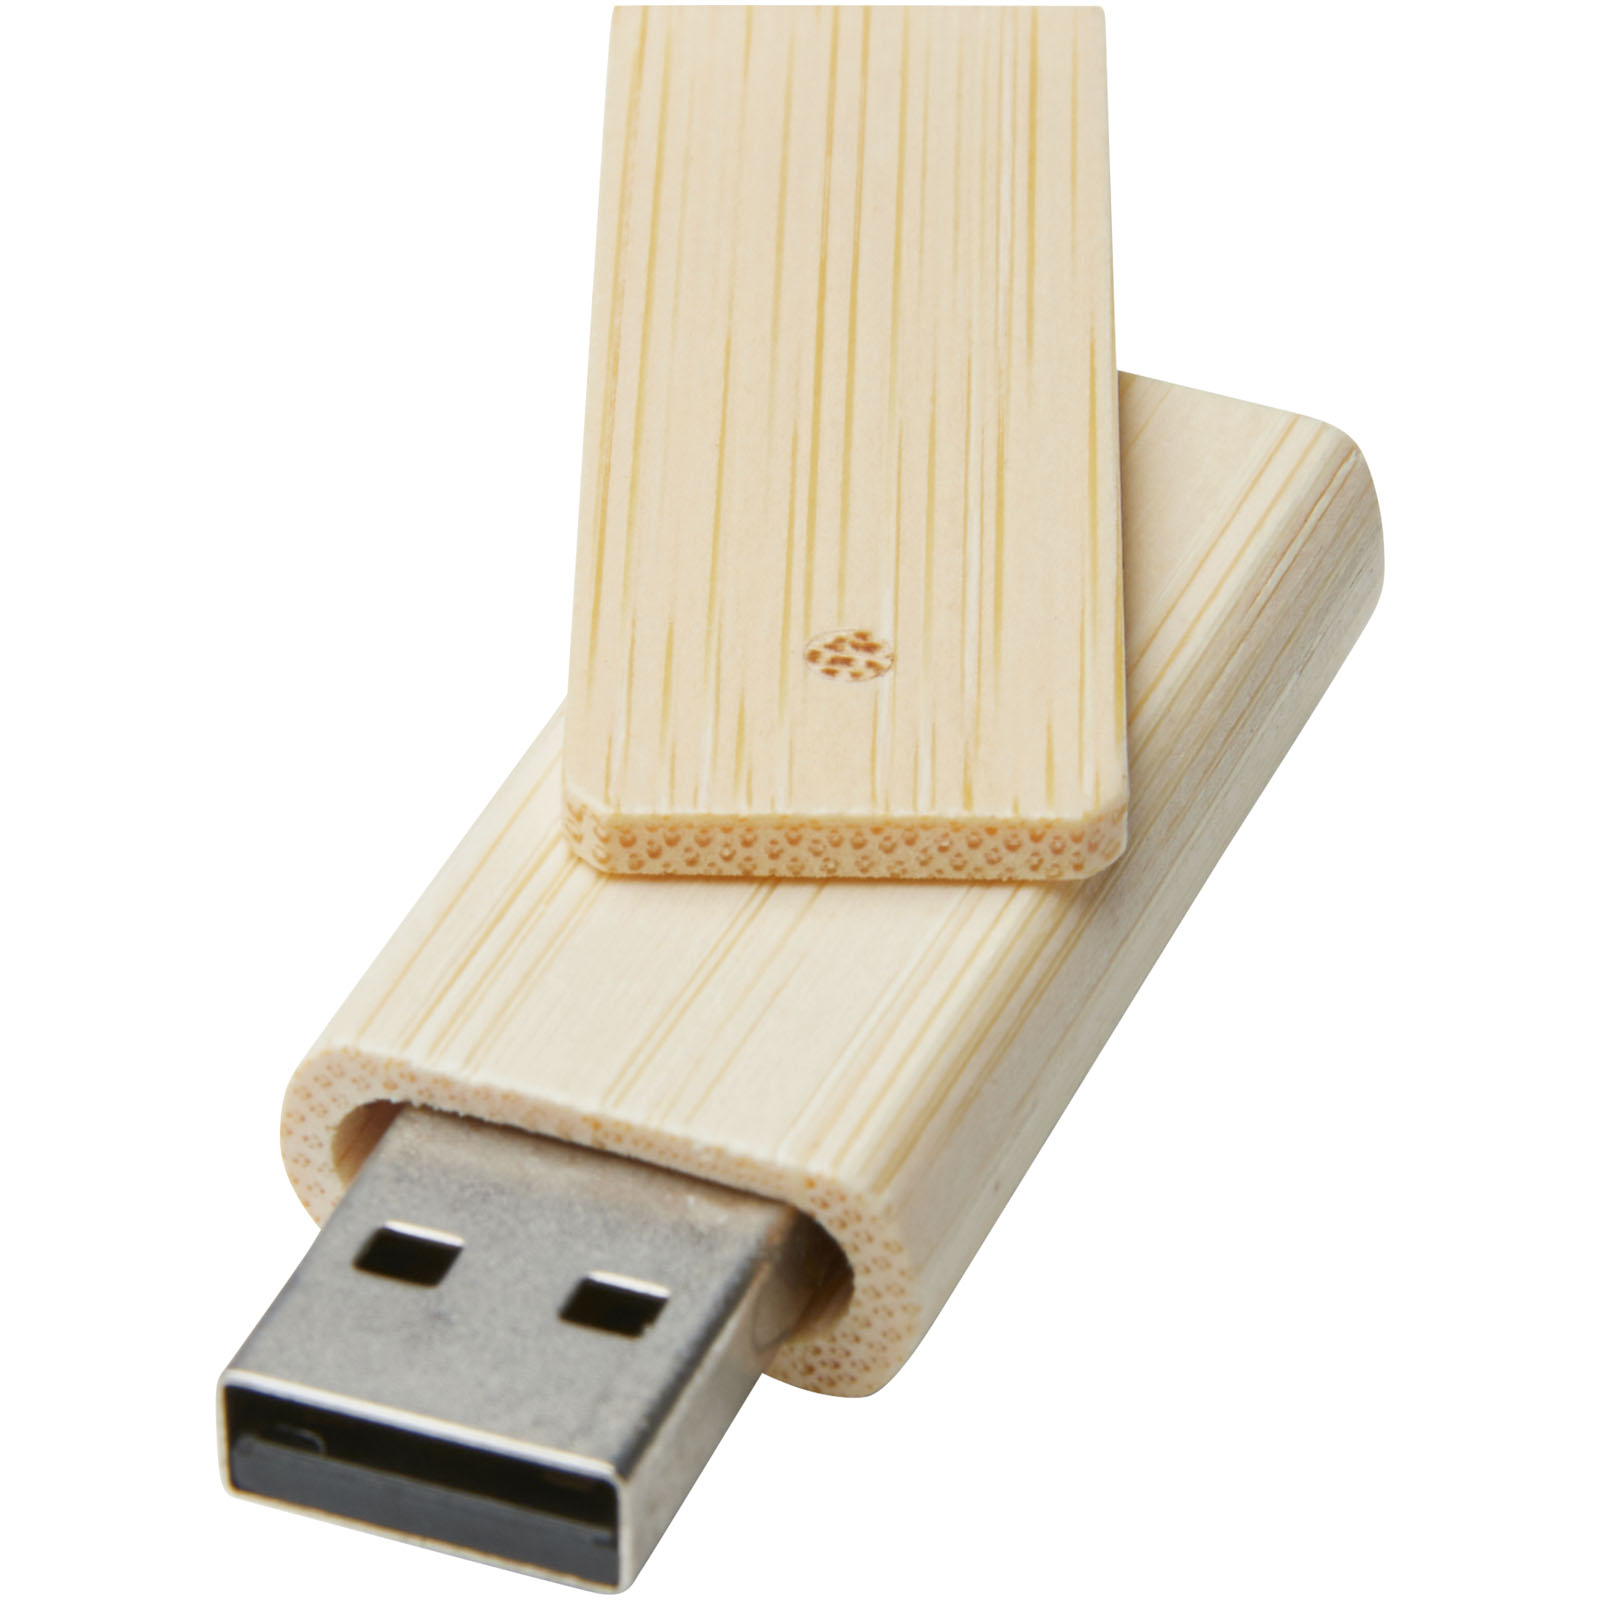 Clés USB publicitaires - Clé USB Rotate 4 Go en bambou - 0